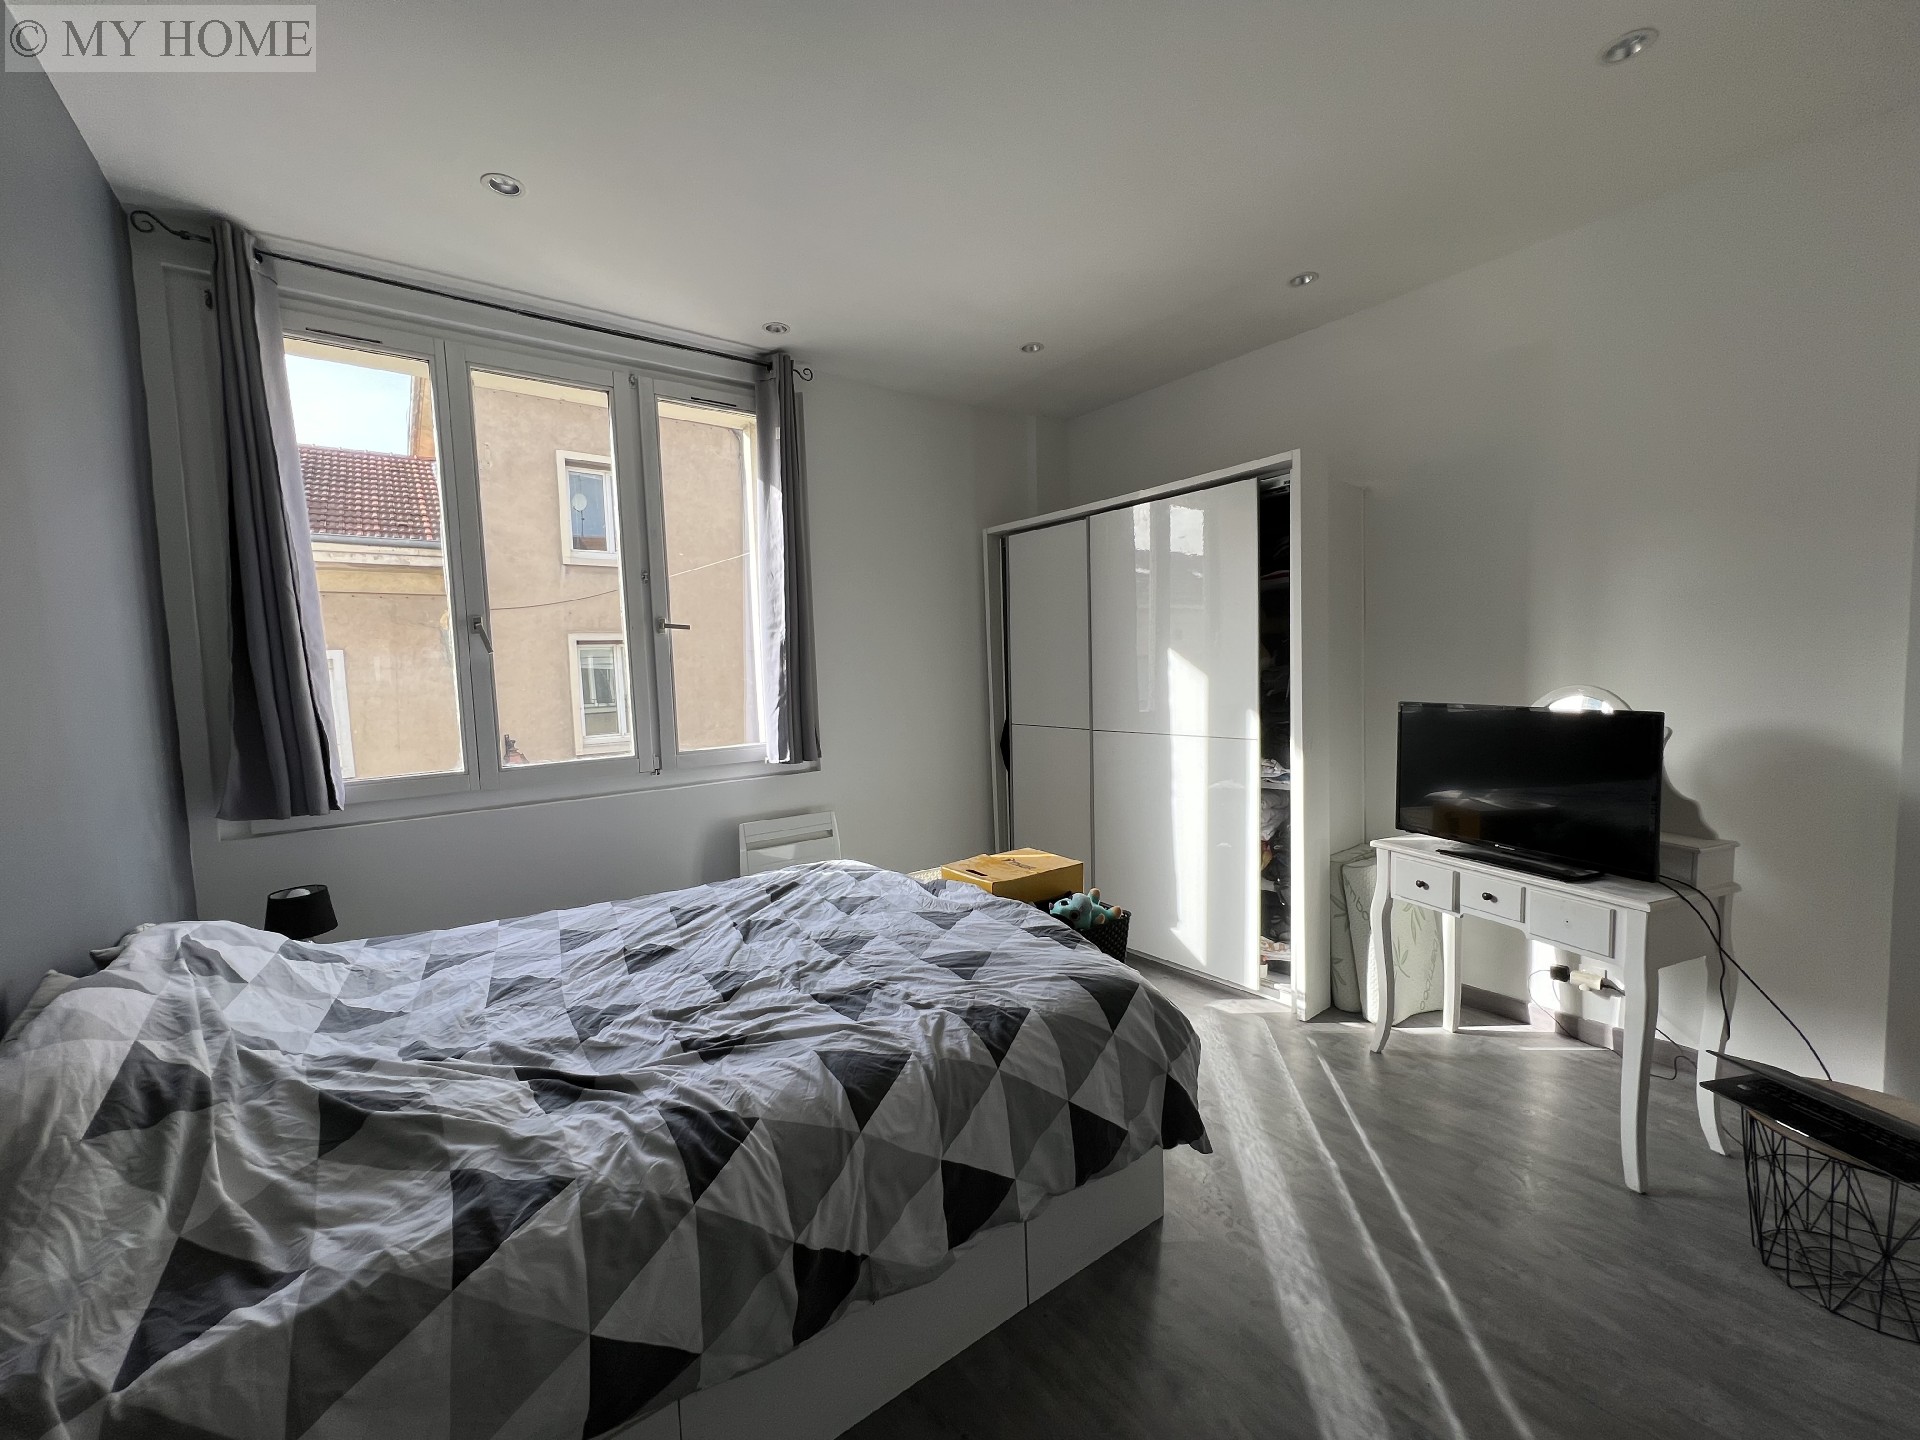 Vente appartement - TOUL 61,75 m², 3 pièces